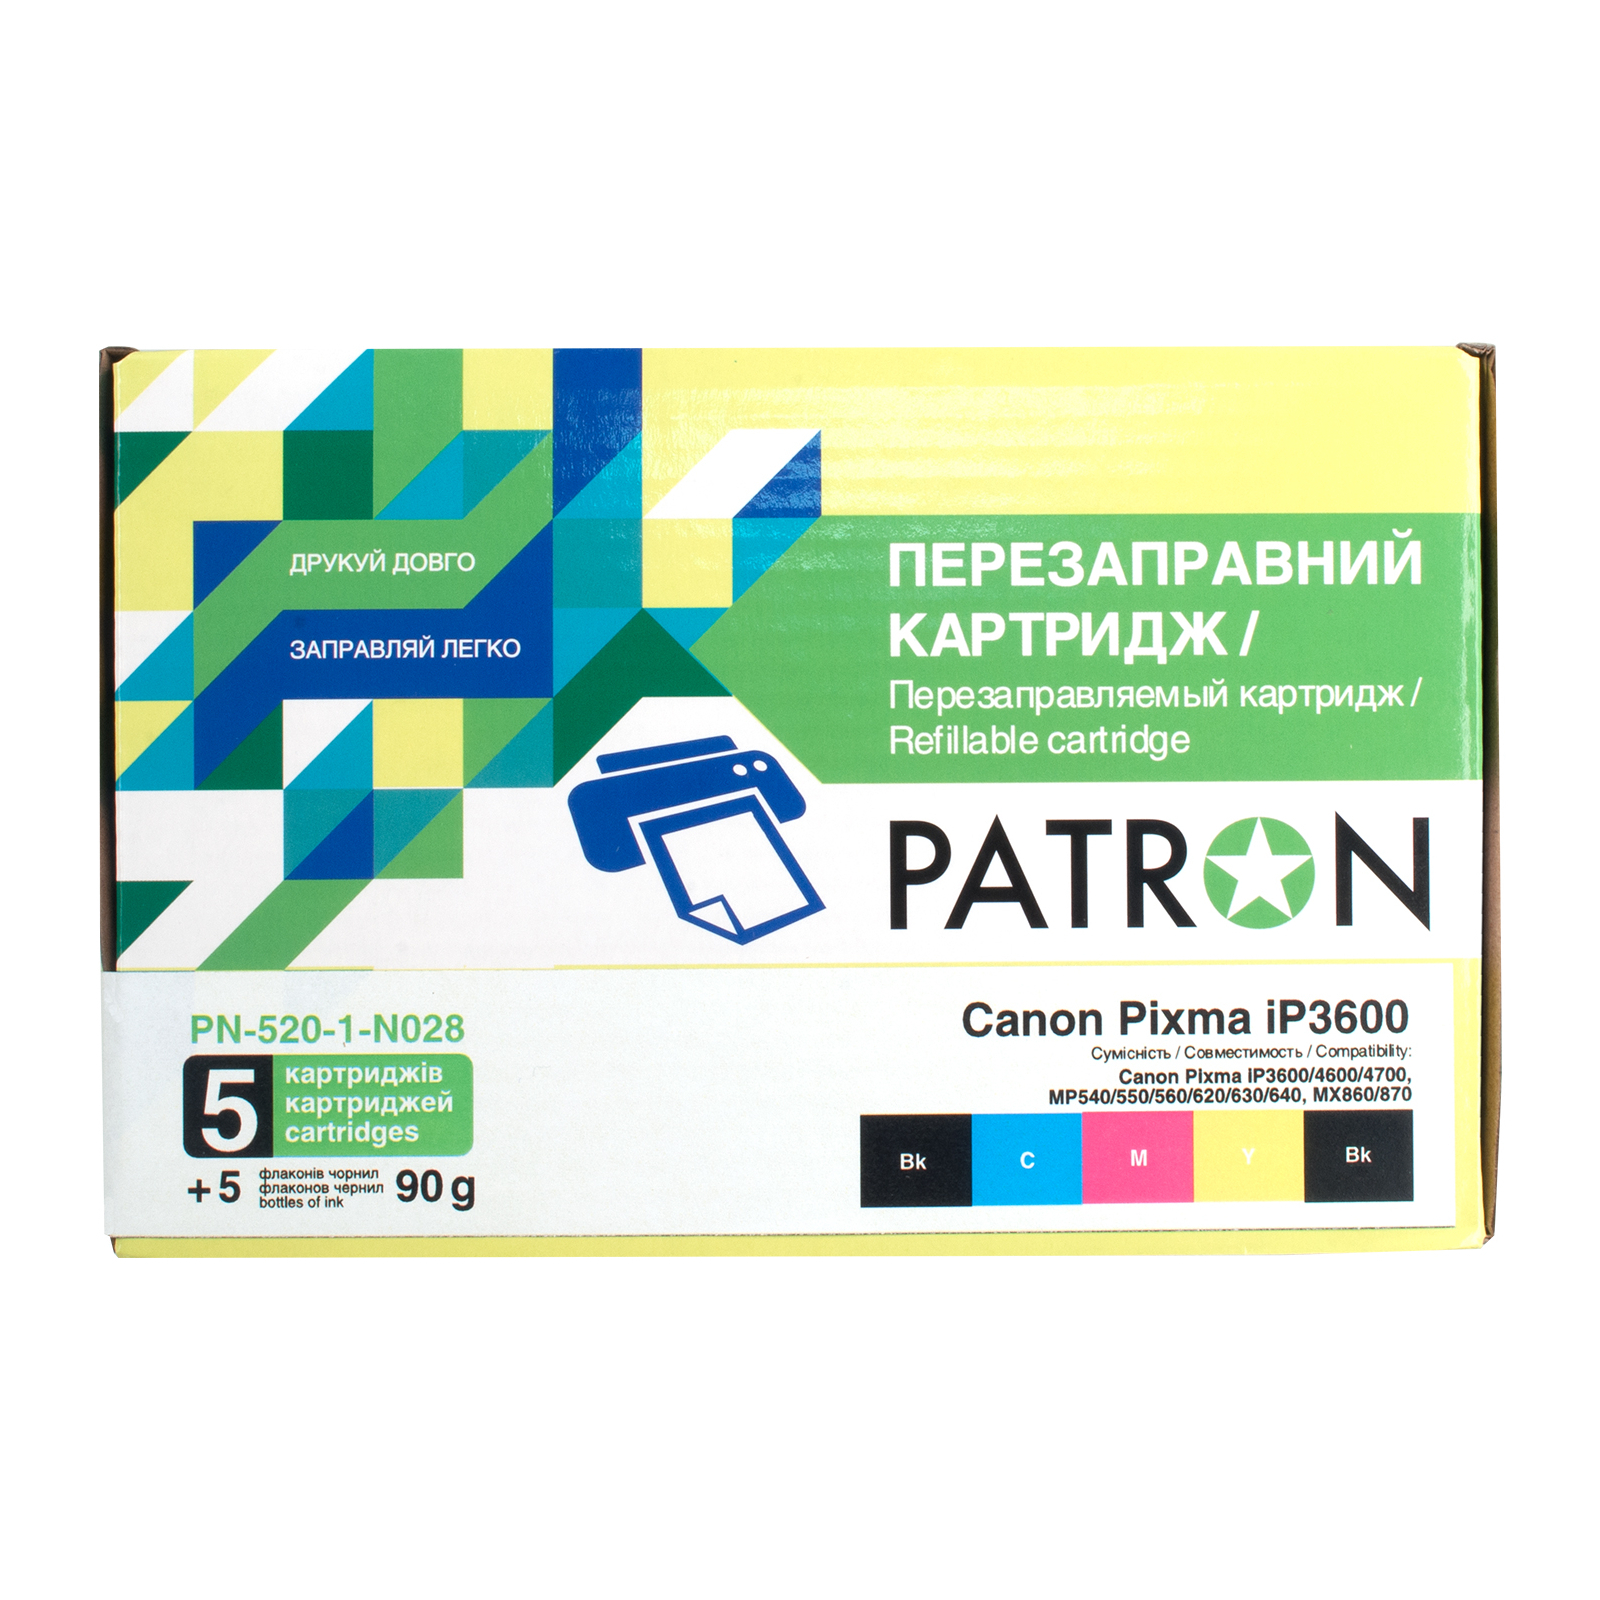 Комплект перезаправляемых картриджей Patron CANON iP3600 (PN-520-1-N028)